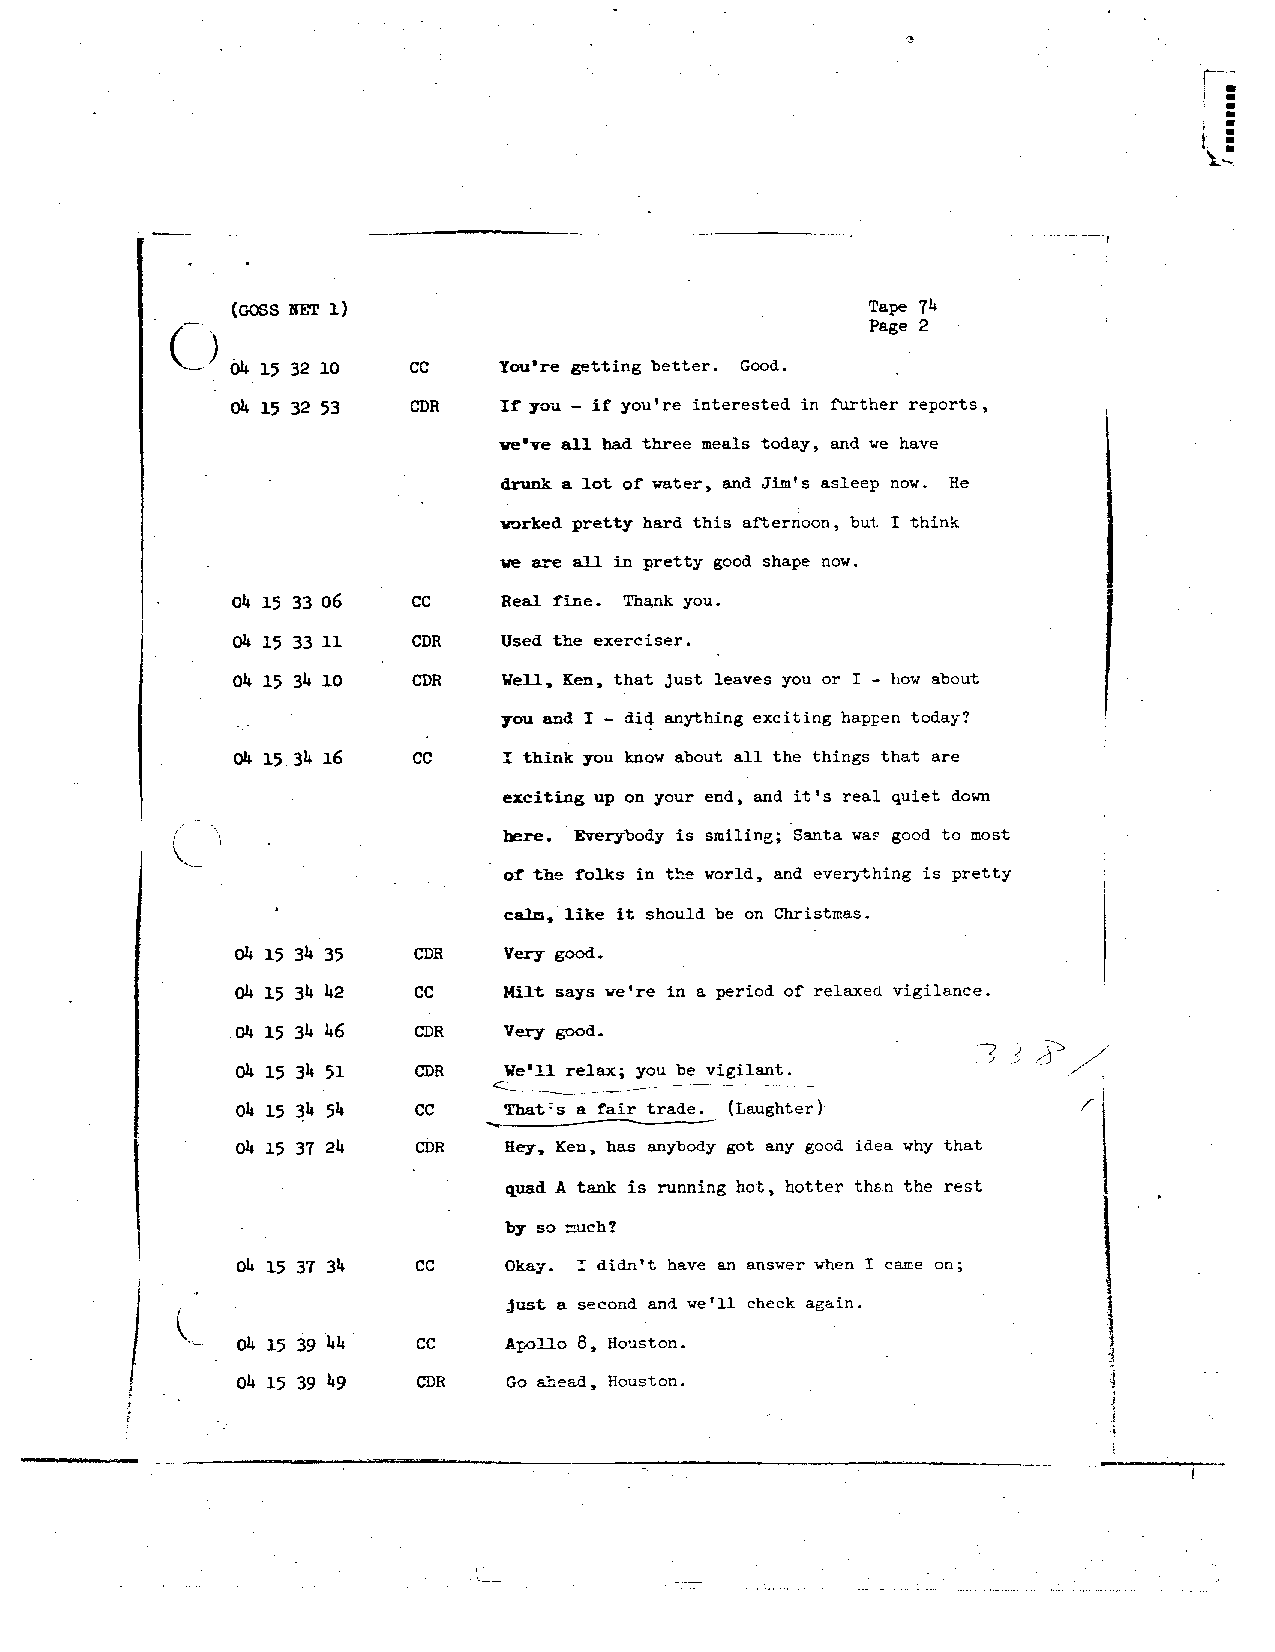 Page 597 of Apollo 8’s original transcript